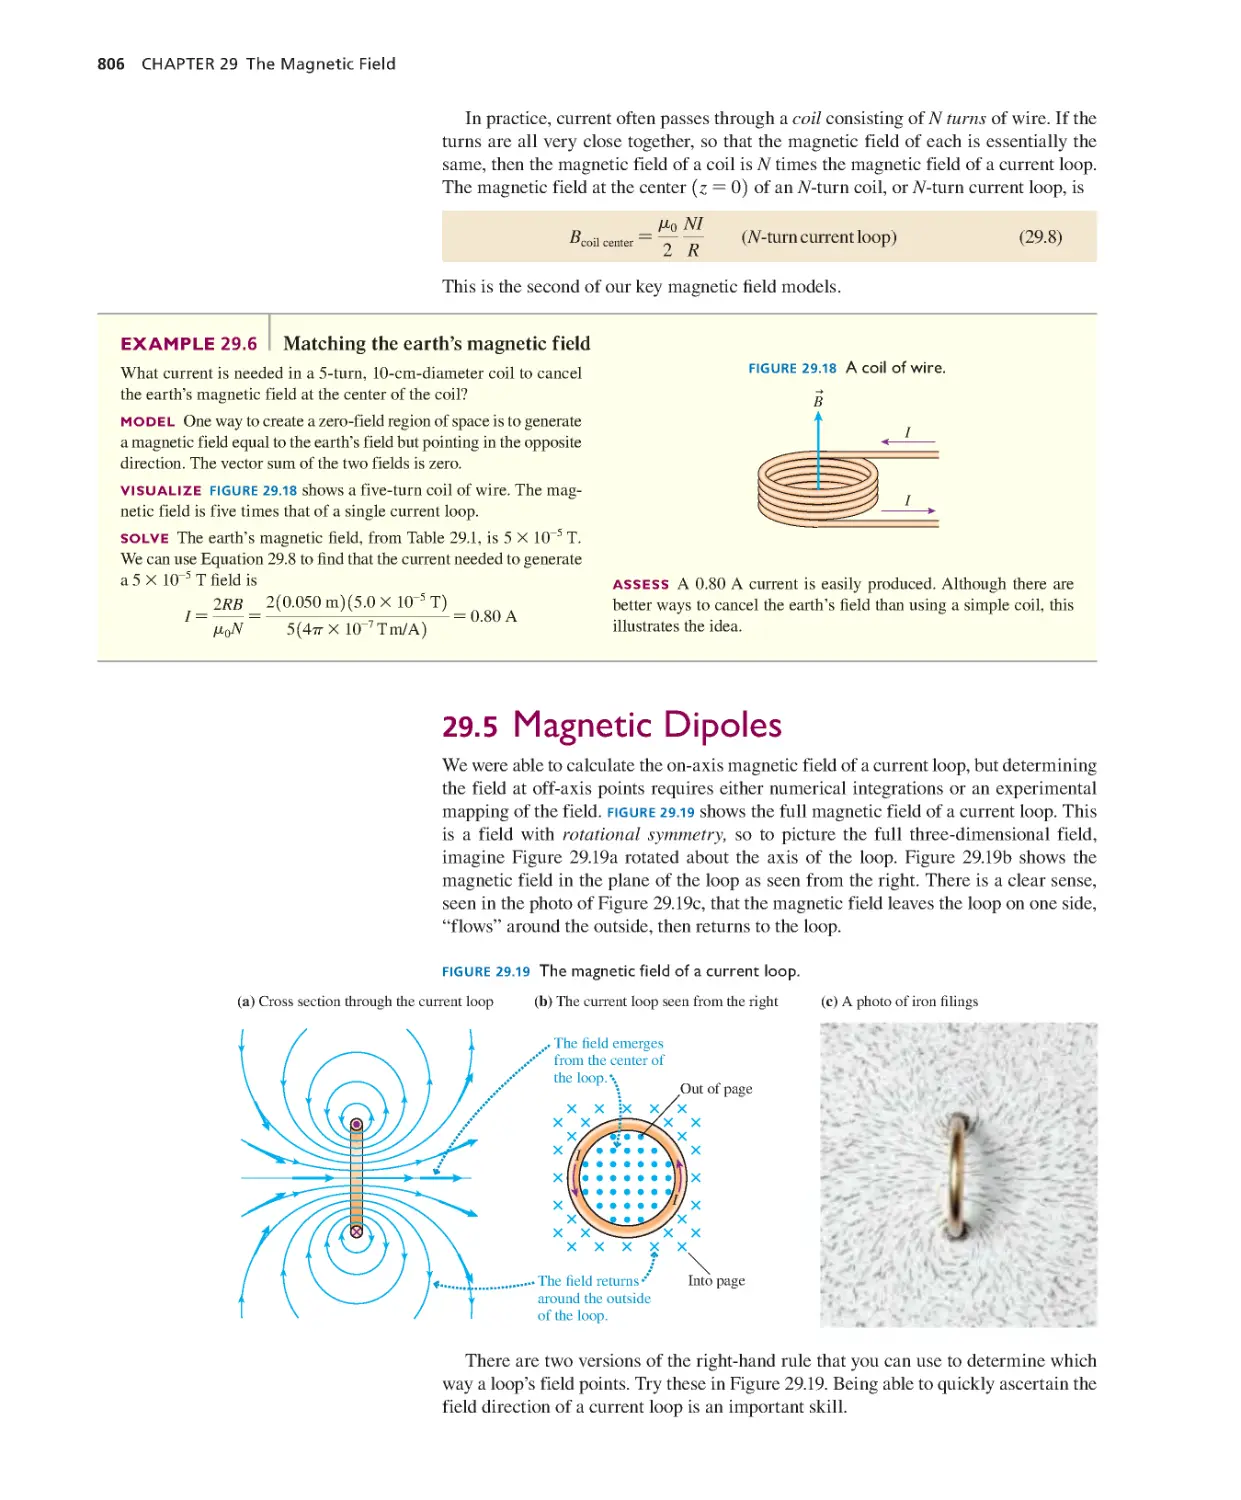 29.5. Magnetic Dipoles